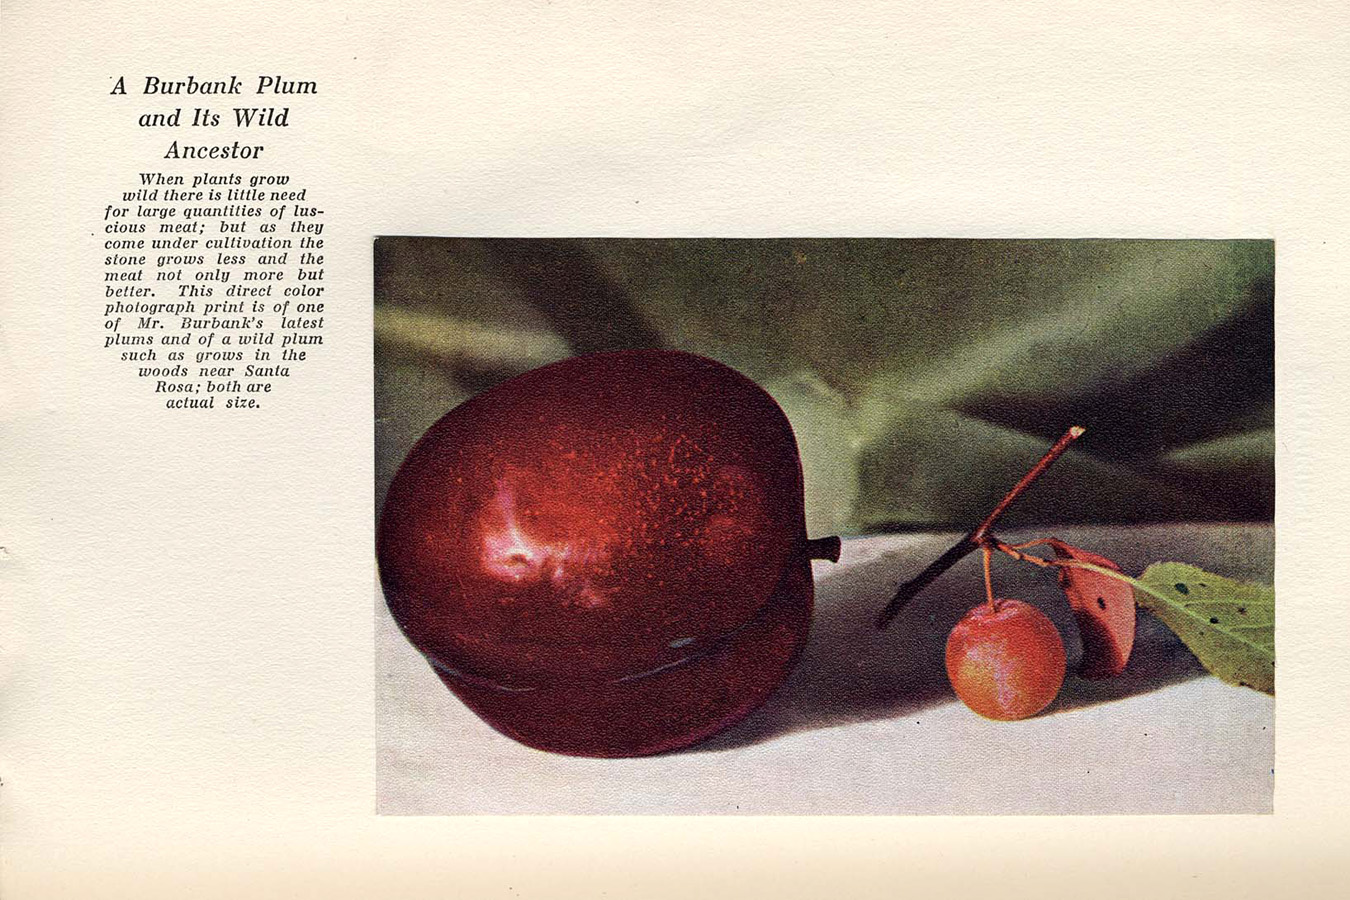 burbank plum shown next to a much smaller wild plum